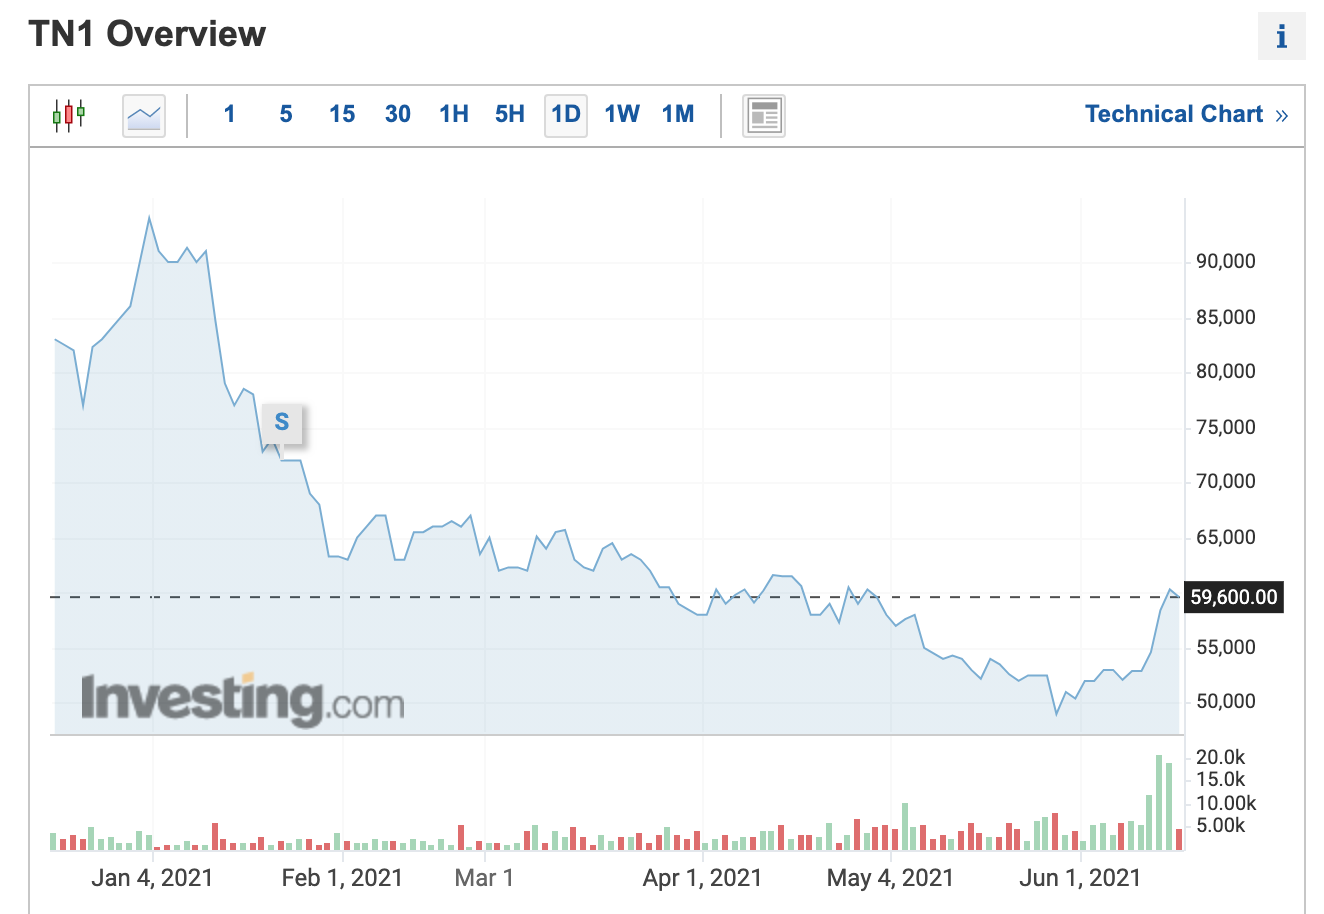 Đồ thị giá cổ phiếu TN1 trên thị trường chứng khoán thời gian qua. Ảnh chụp màn hình